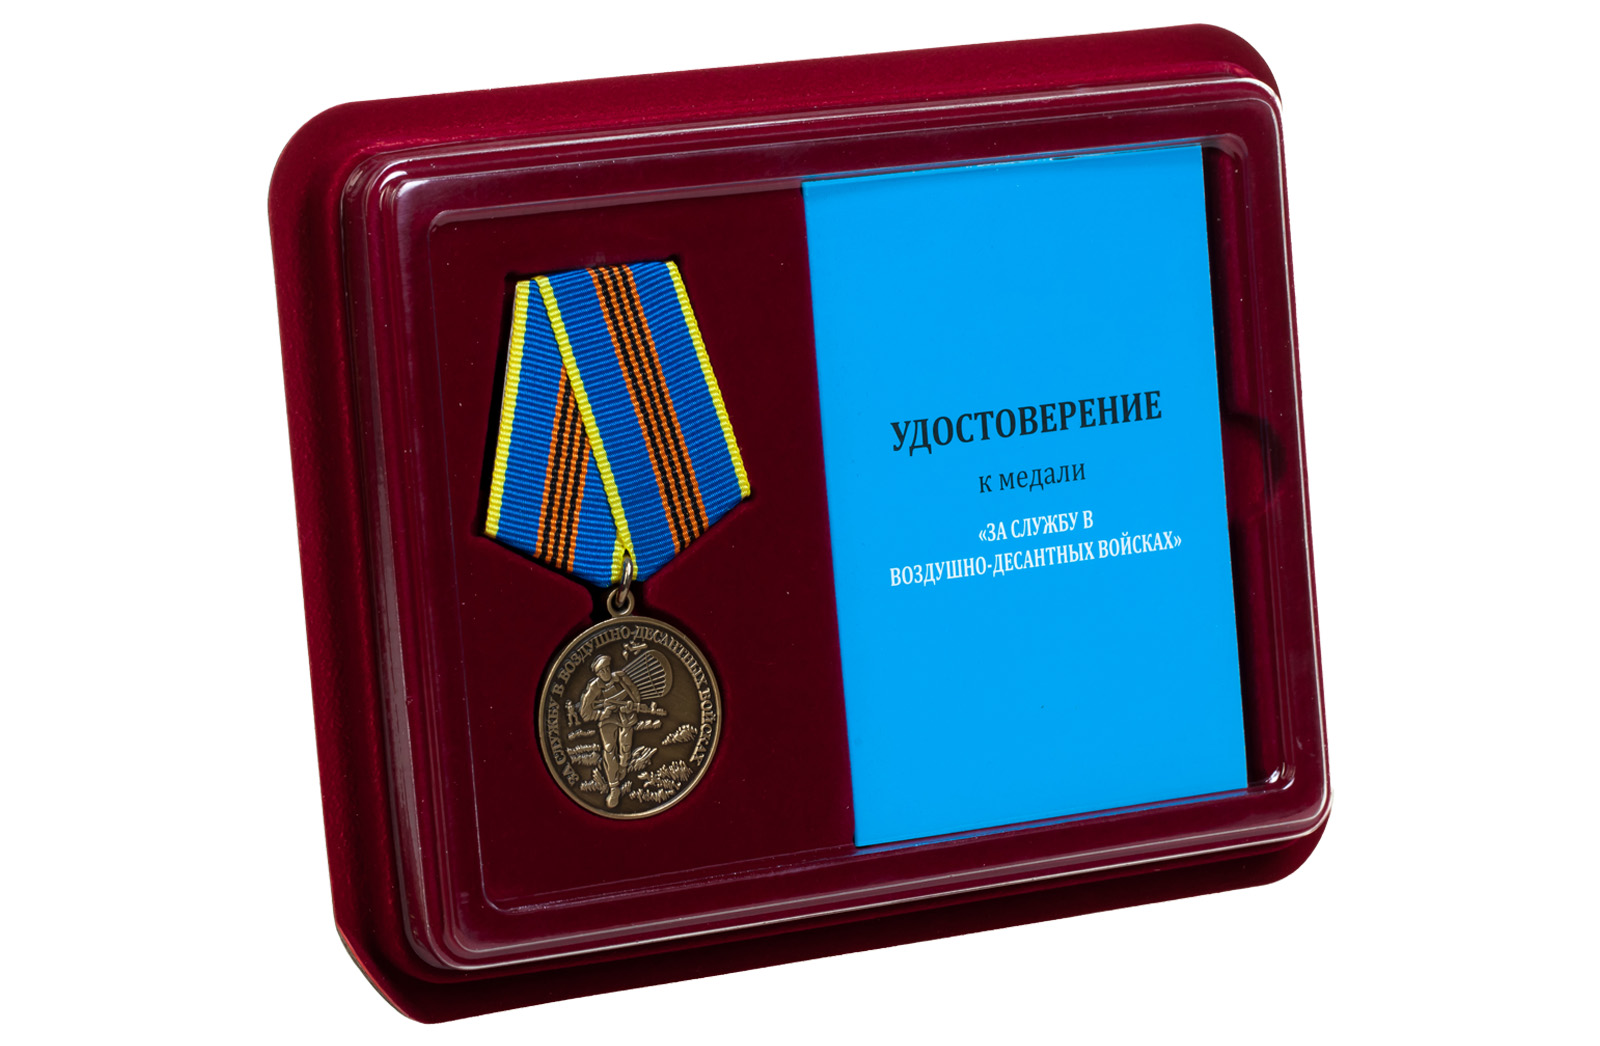 Купить медаль За службу в Воздушно-десантных войсках оптом или в розницу